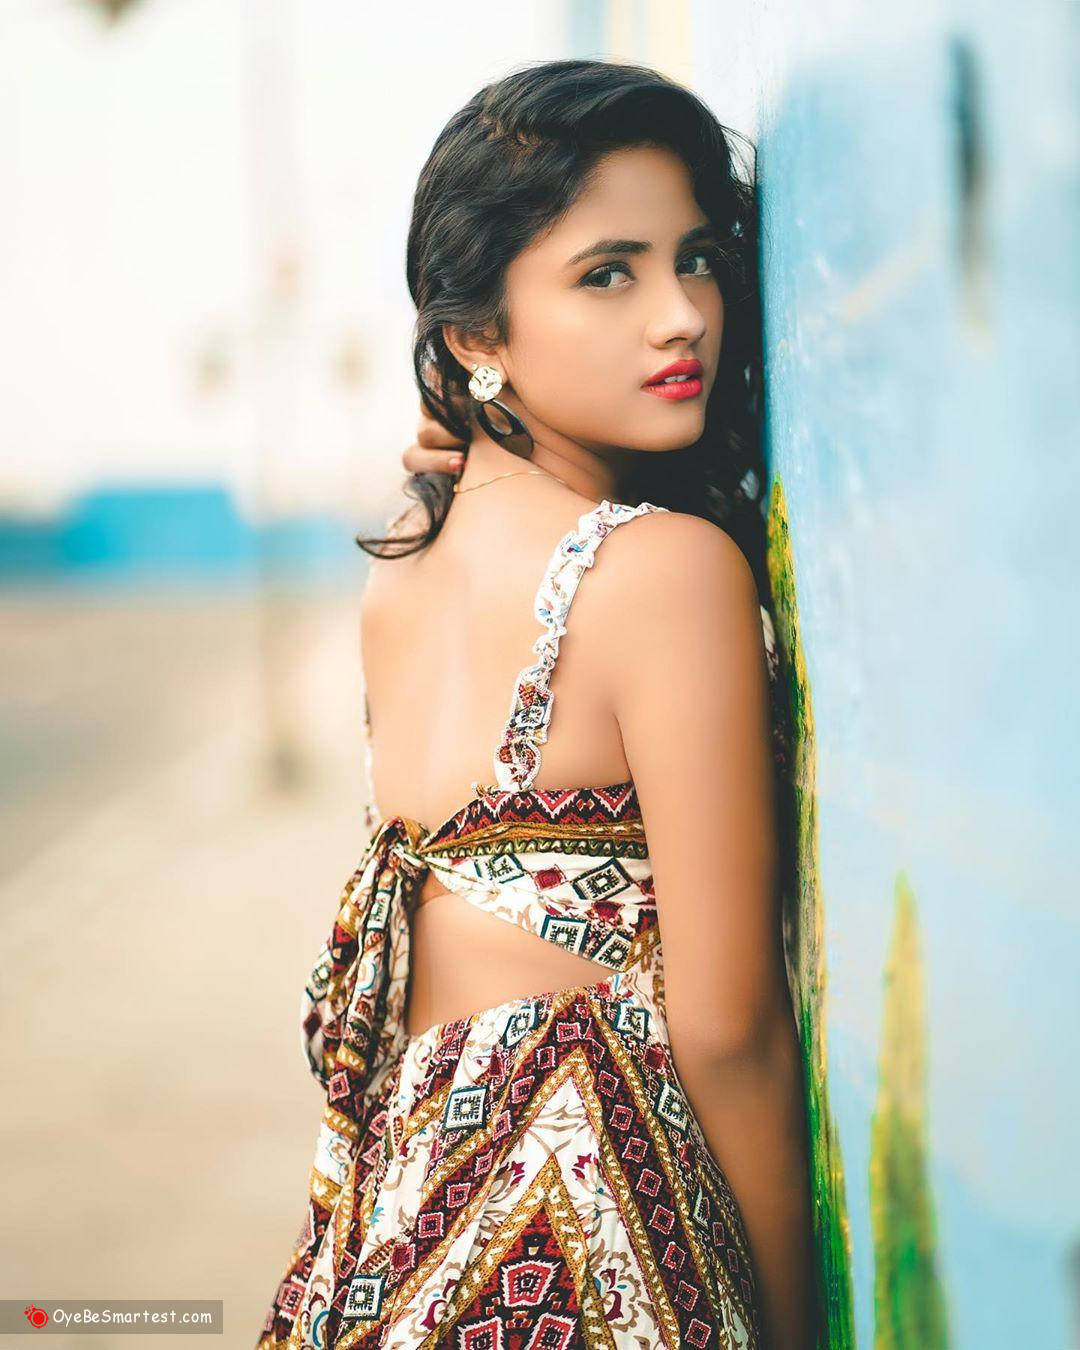 Nisha Guragain Wearing Backless Dress Background